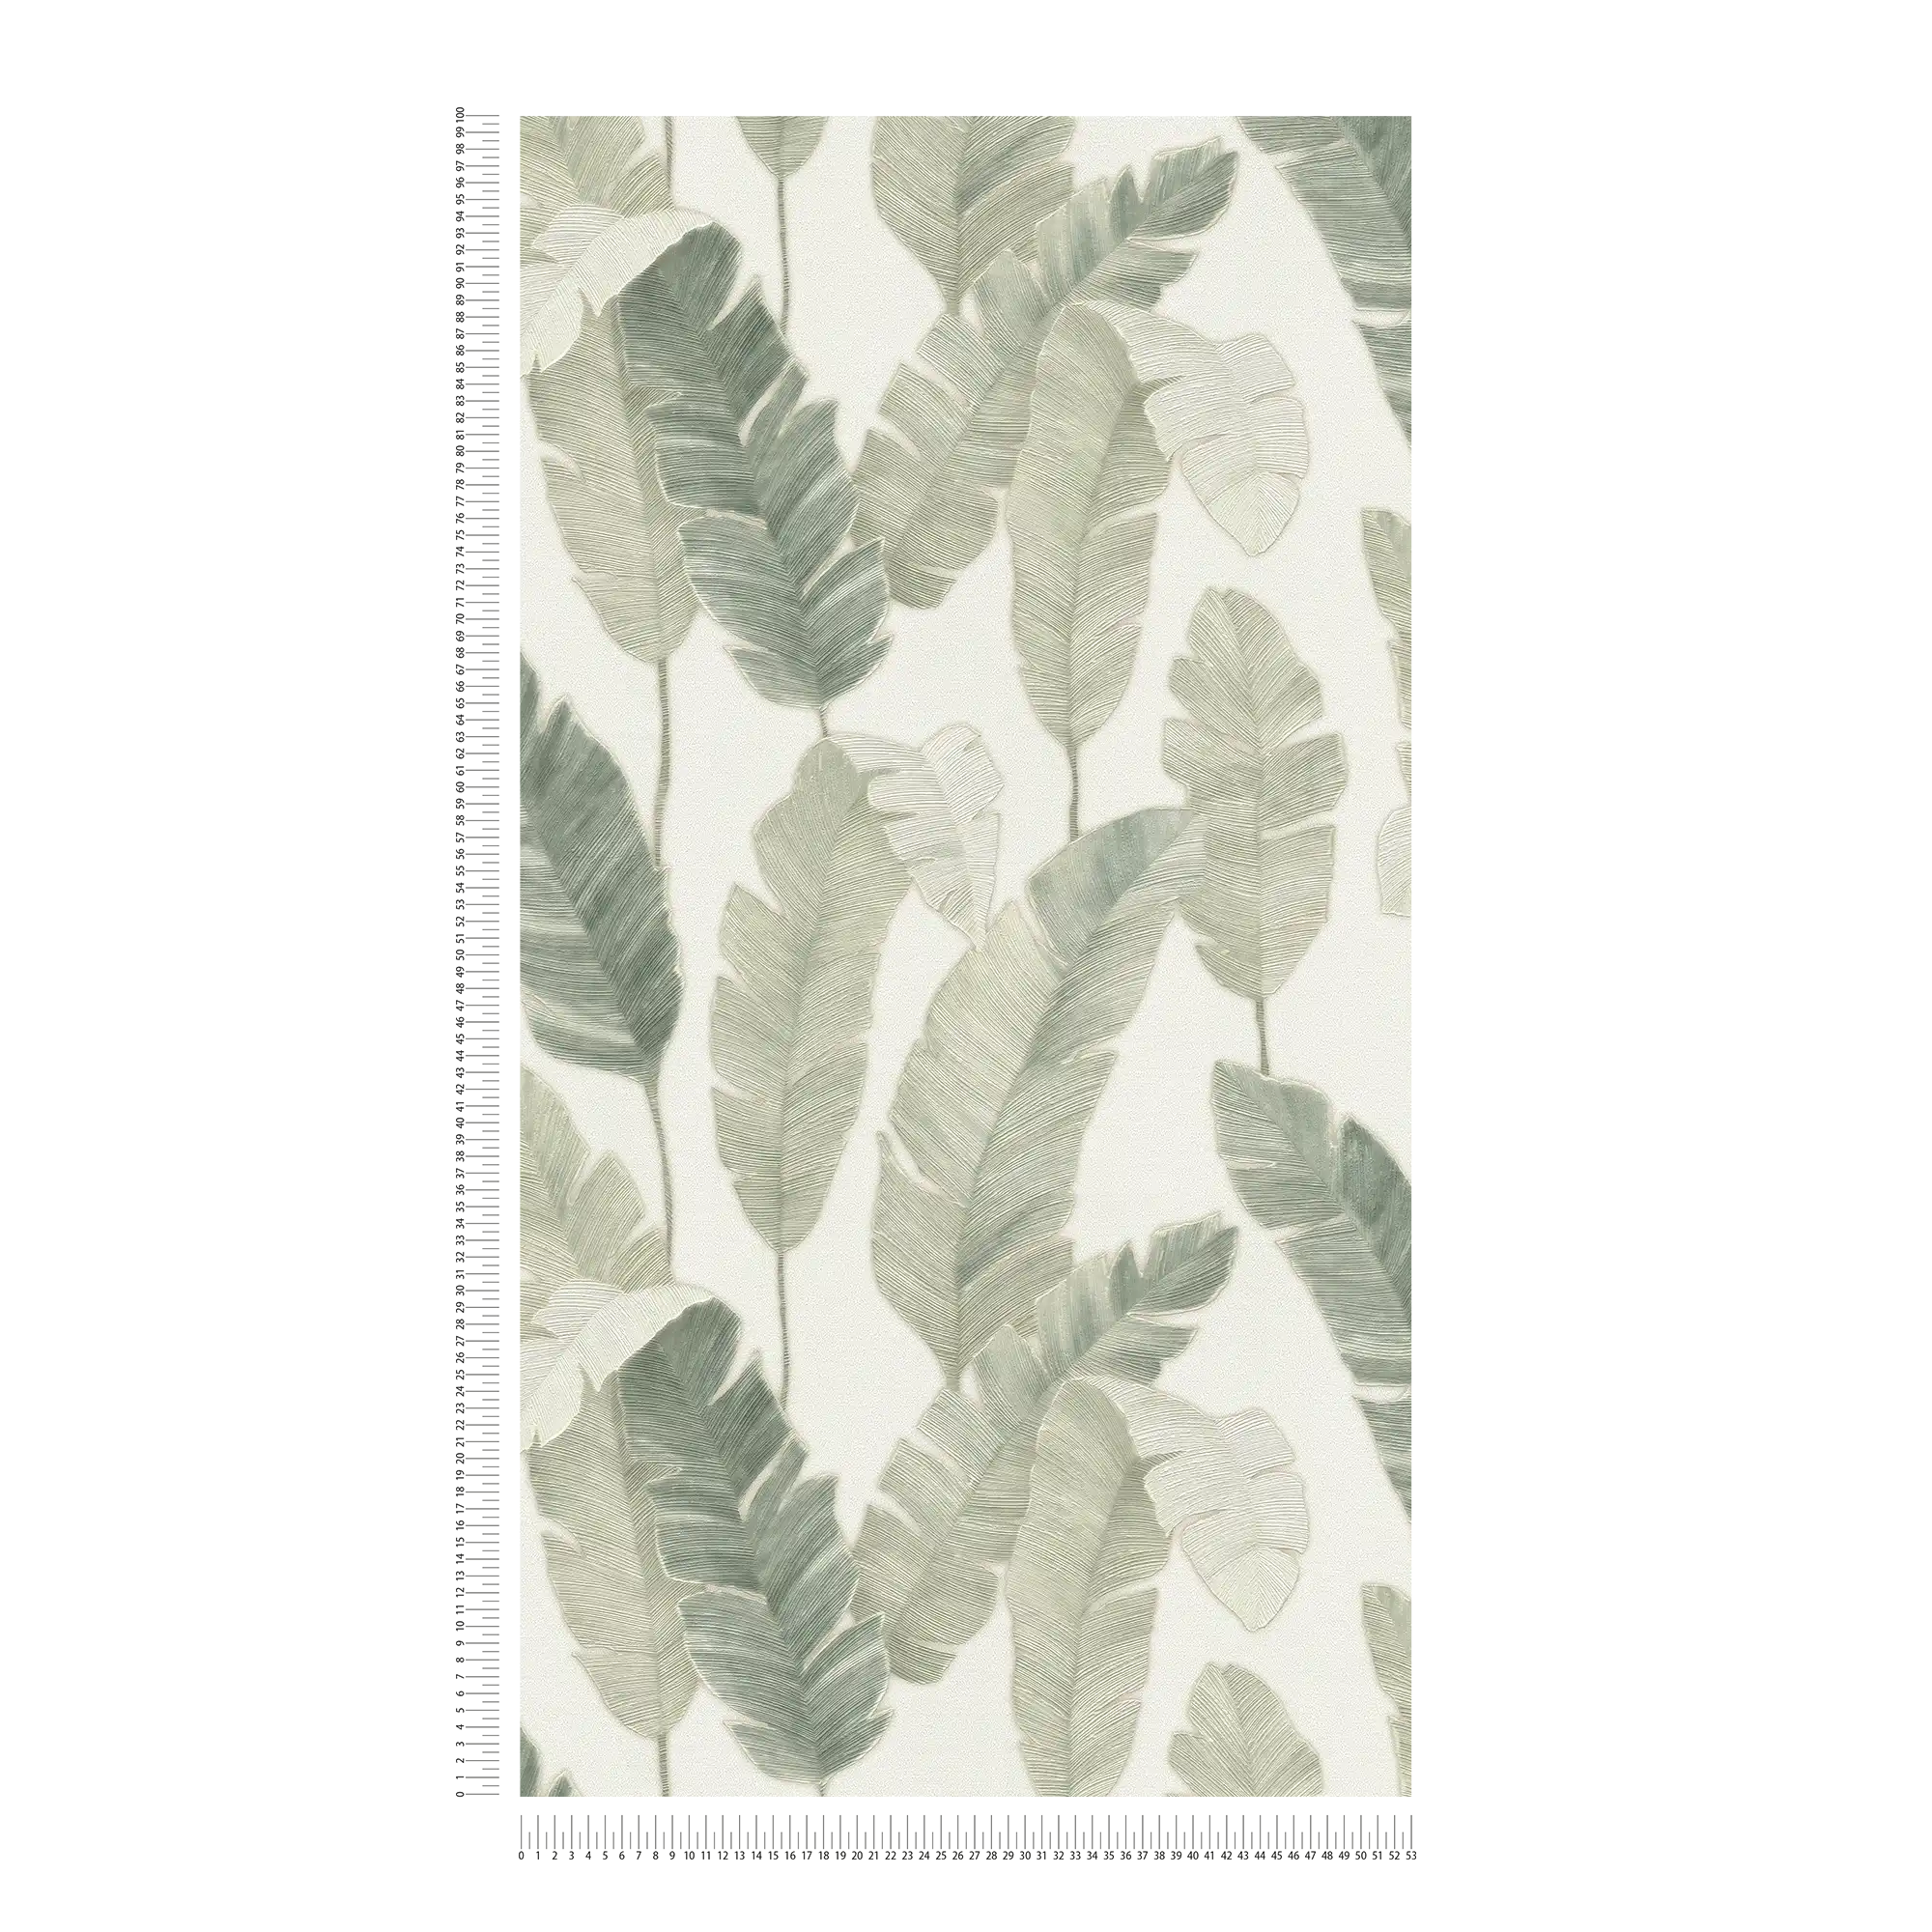             Carta da parati in tessuto non tessuto con foglie di palma in colore chiaro - bianco, verde, blu
        